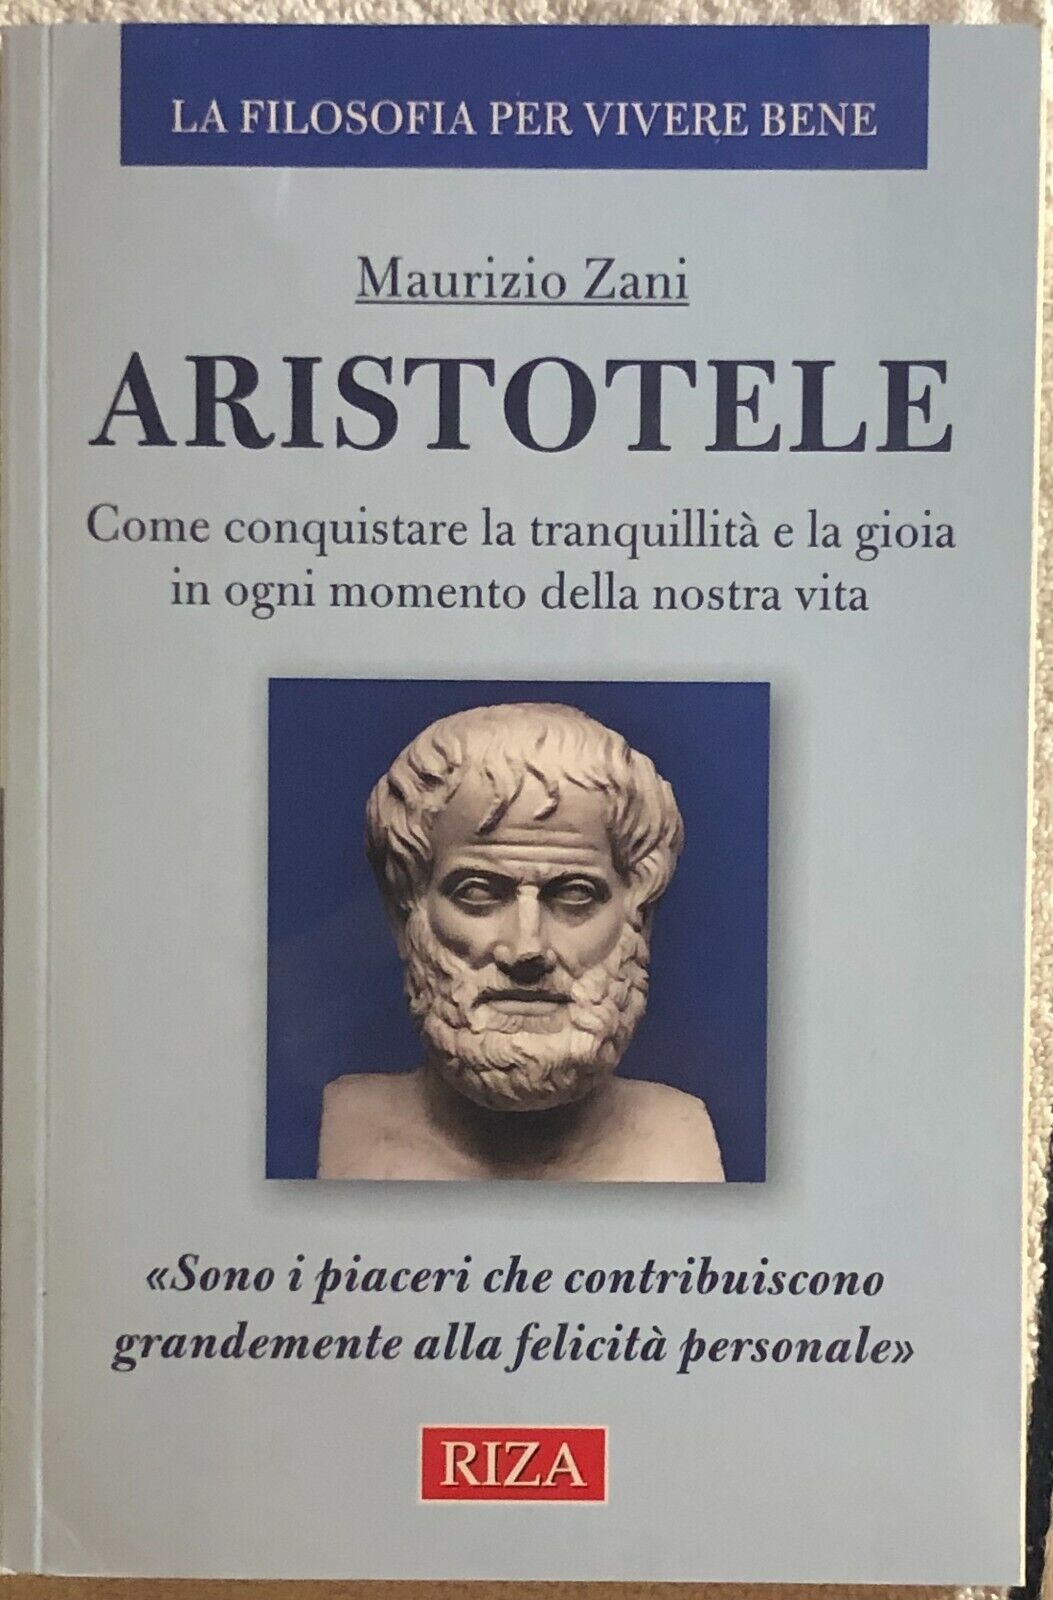 Aristotele di Maurizio Zani,  2019,  Riza